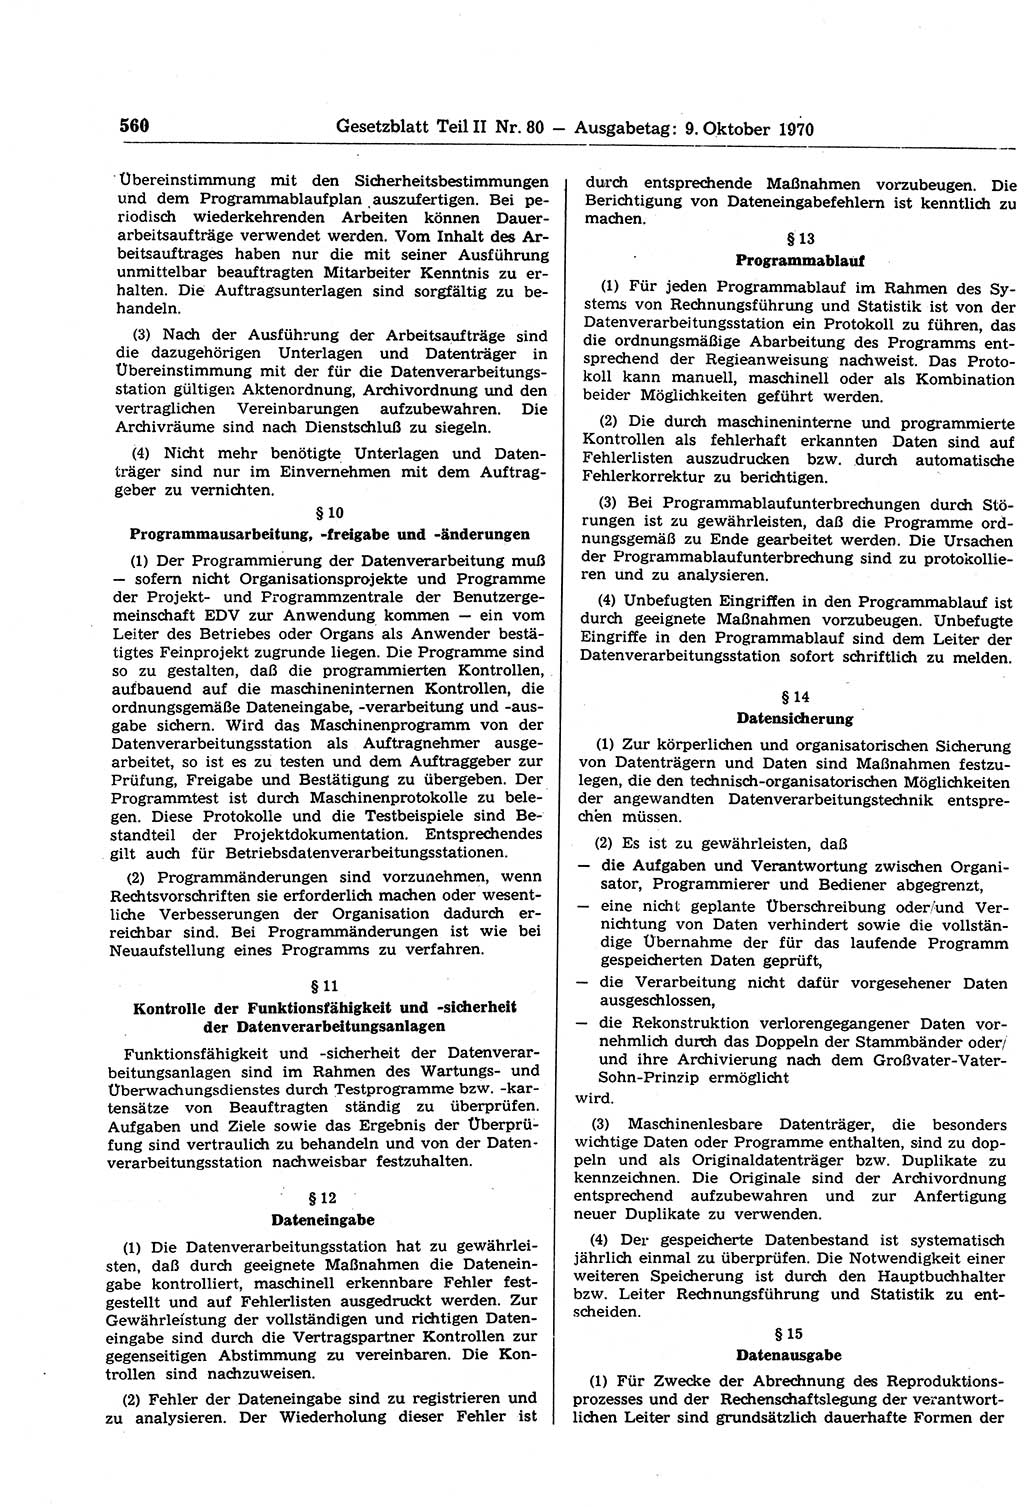 Gesetzblatt (GBl.) der Deutschen Demokratischen Republik (DDR) Teil ⅠⅠ 1970, Seite 560 (GBl. DDR ⅠⅠ 1970, S. 560)